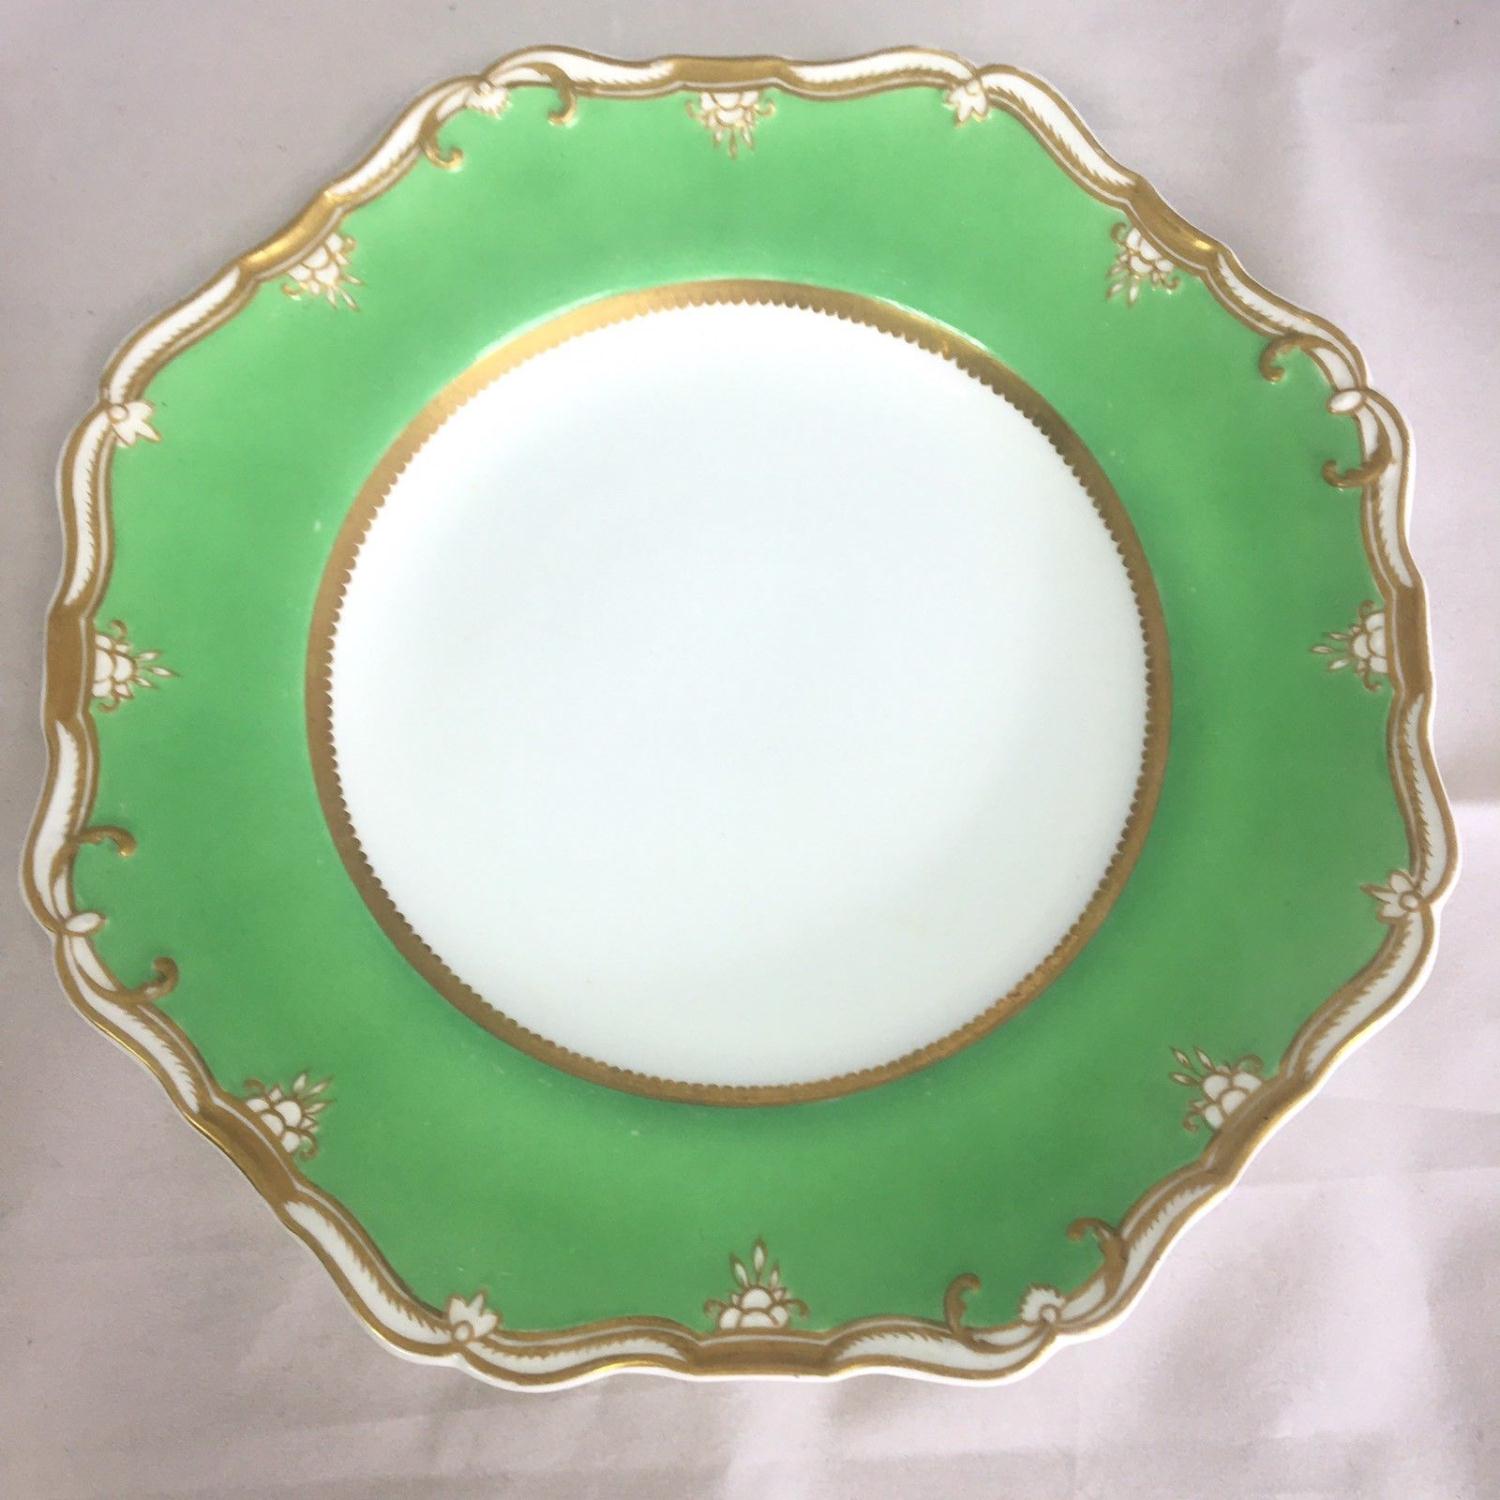 Set of 6 Regency Georgian Spode Felspar Porcelain Plates Pattern 4809 Green Gilt - Image 3 of 3